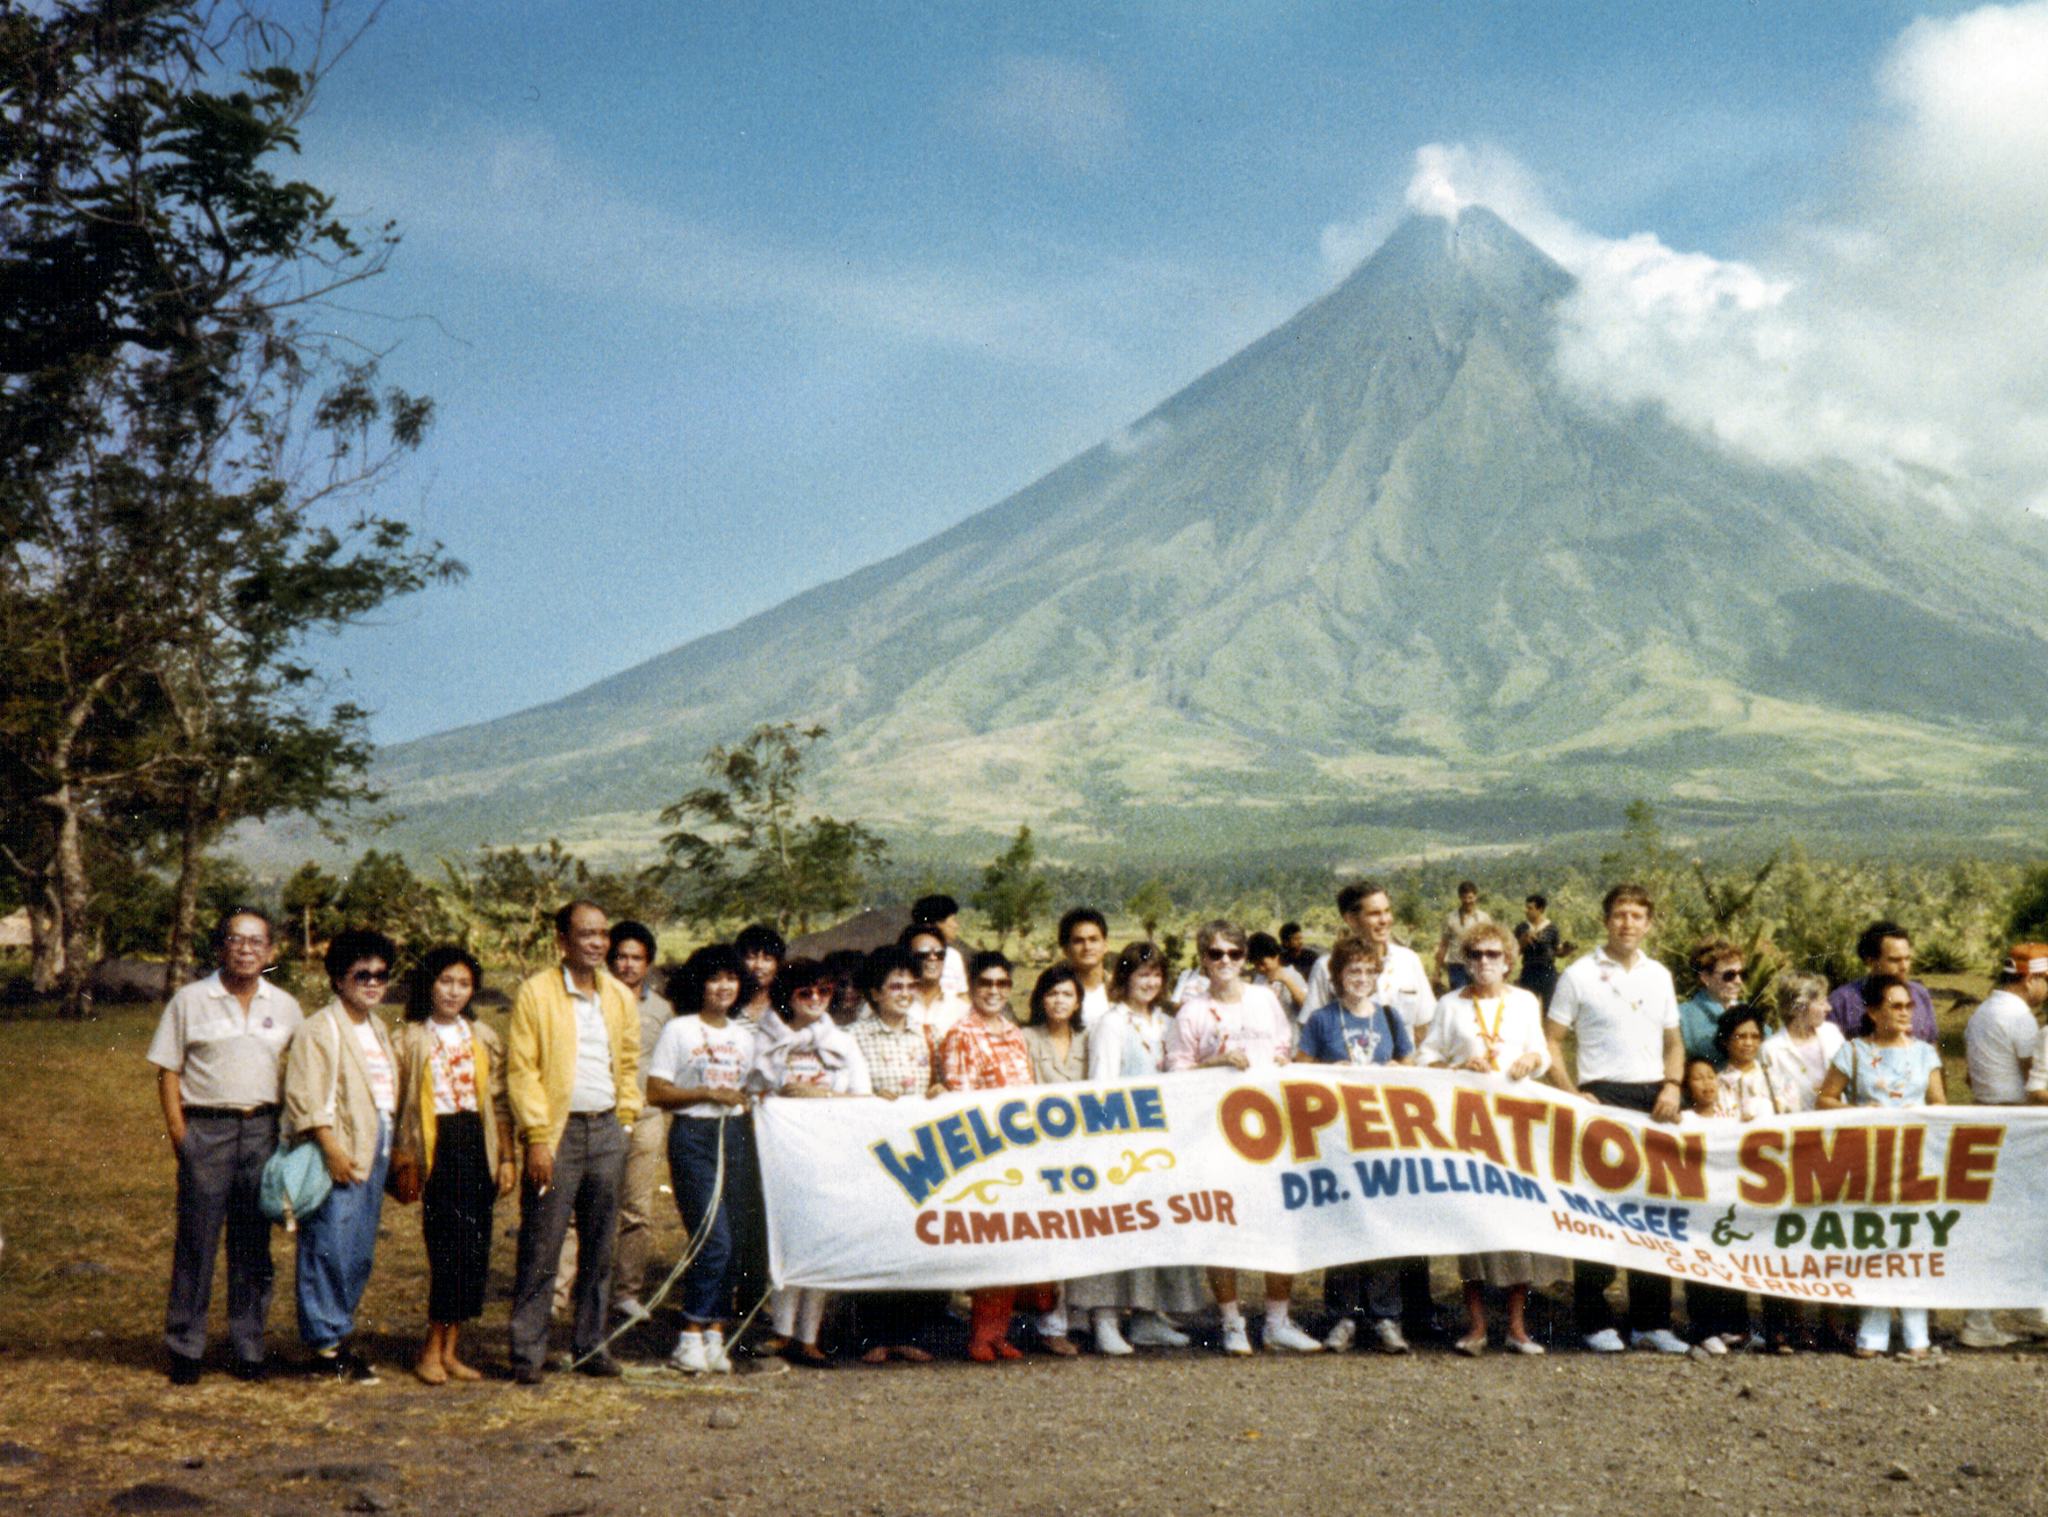 historisk bild från operation smiles första uppdrag i filippinerna